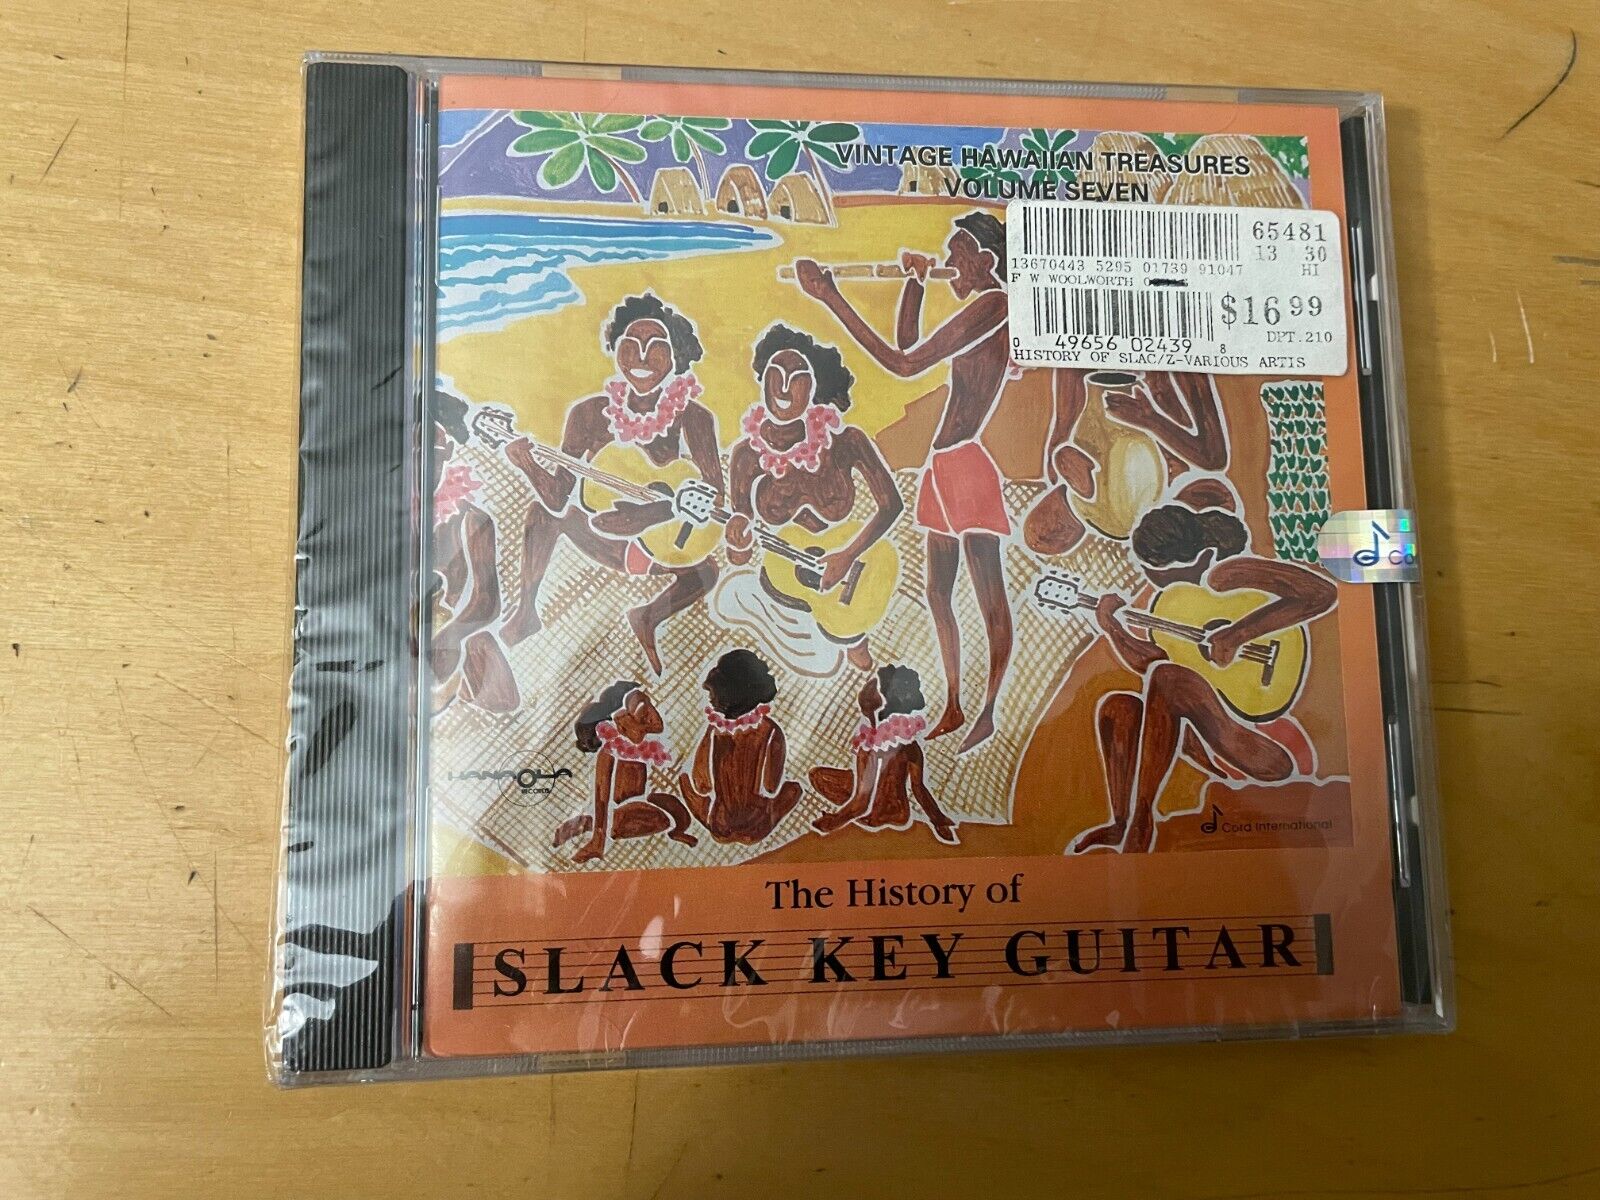 Slack Key Guitar Vtg Hawiaan Treasures CD Volume 7 Sealed 1995